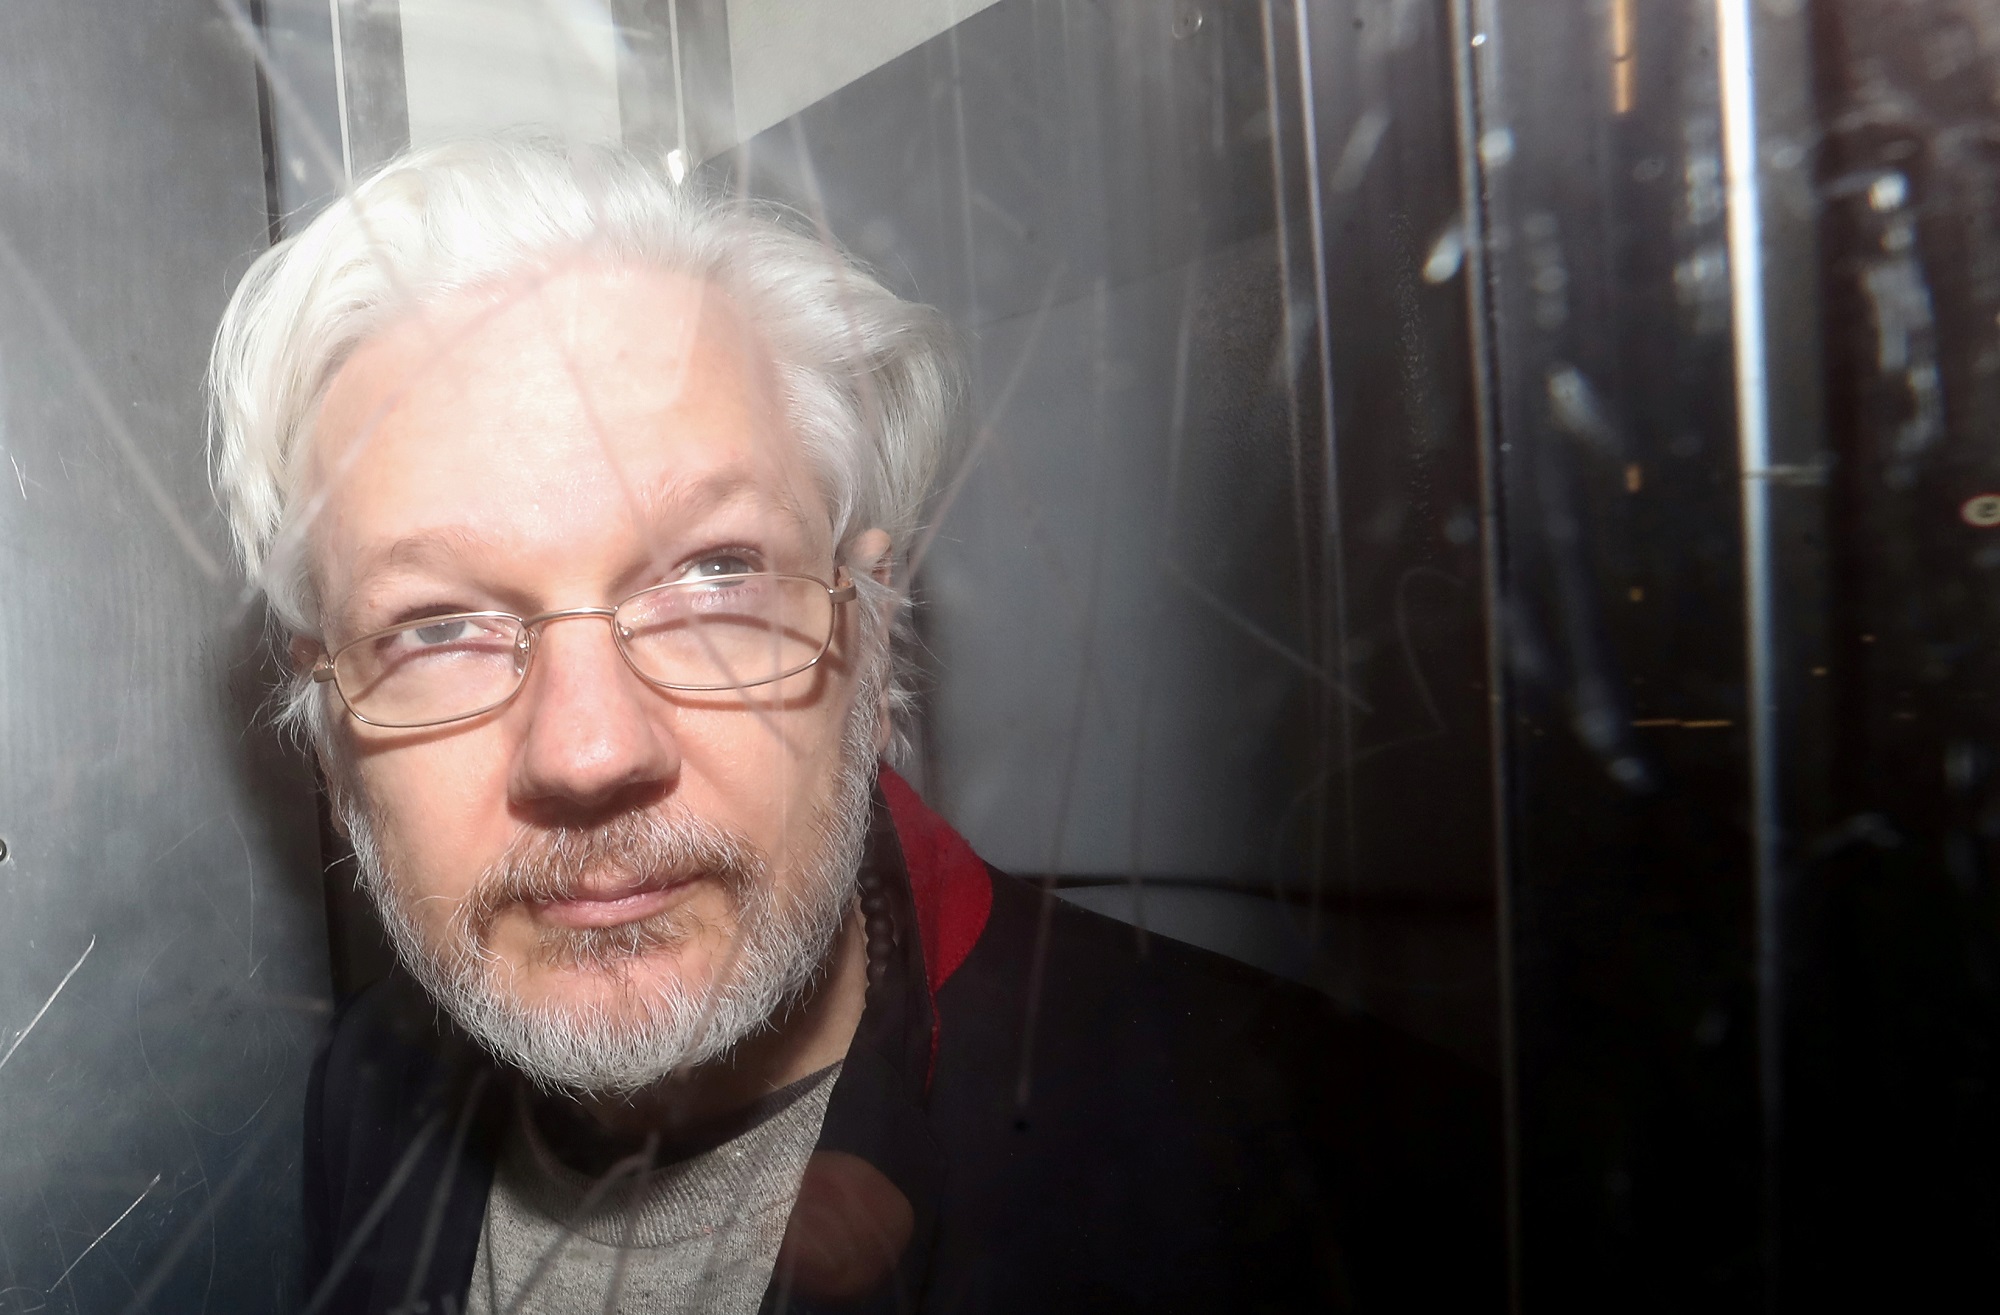 El juicio de extradición a EEUU de Assange comienza el #24Feb en Londres